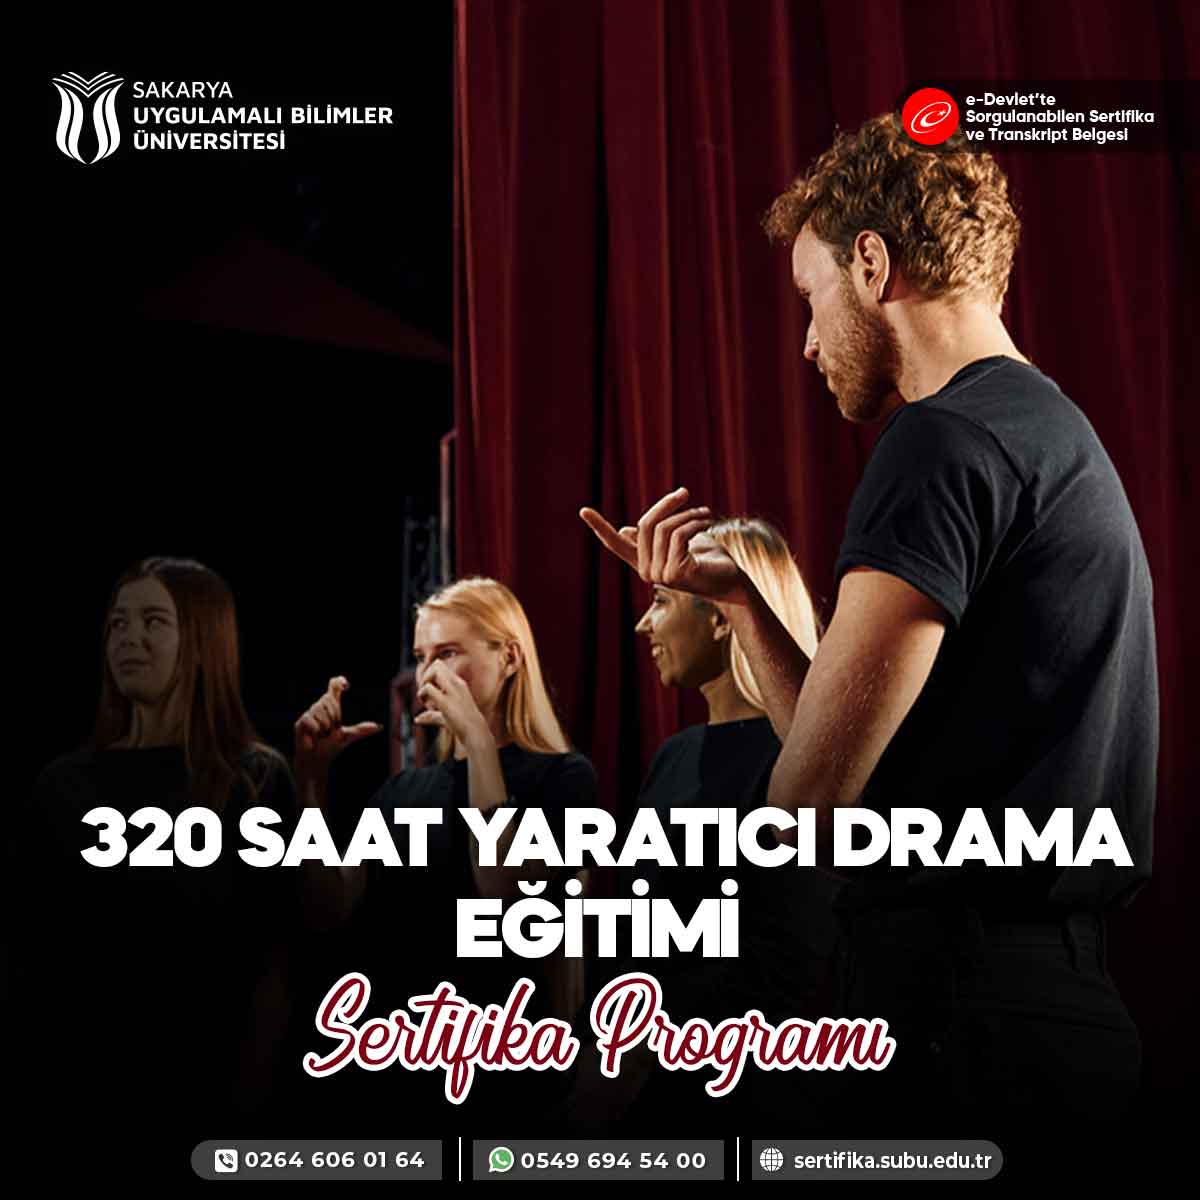 320 Saat Yaratıcı Drama Eğitimi Sertifika Programı